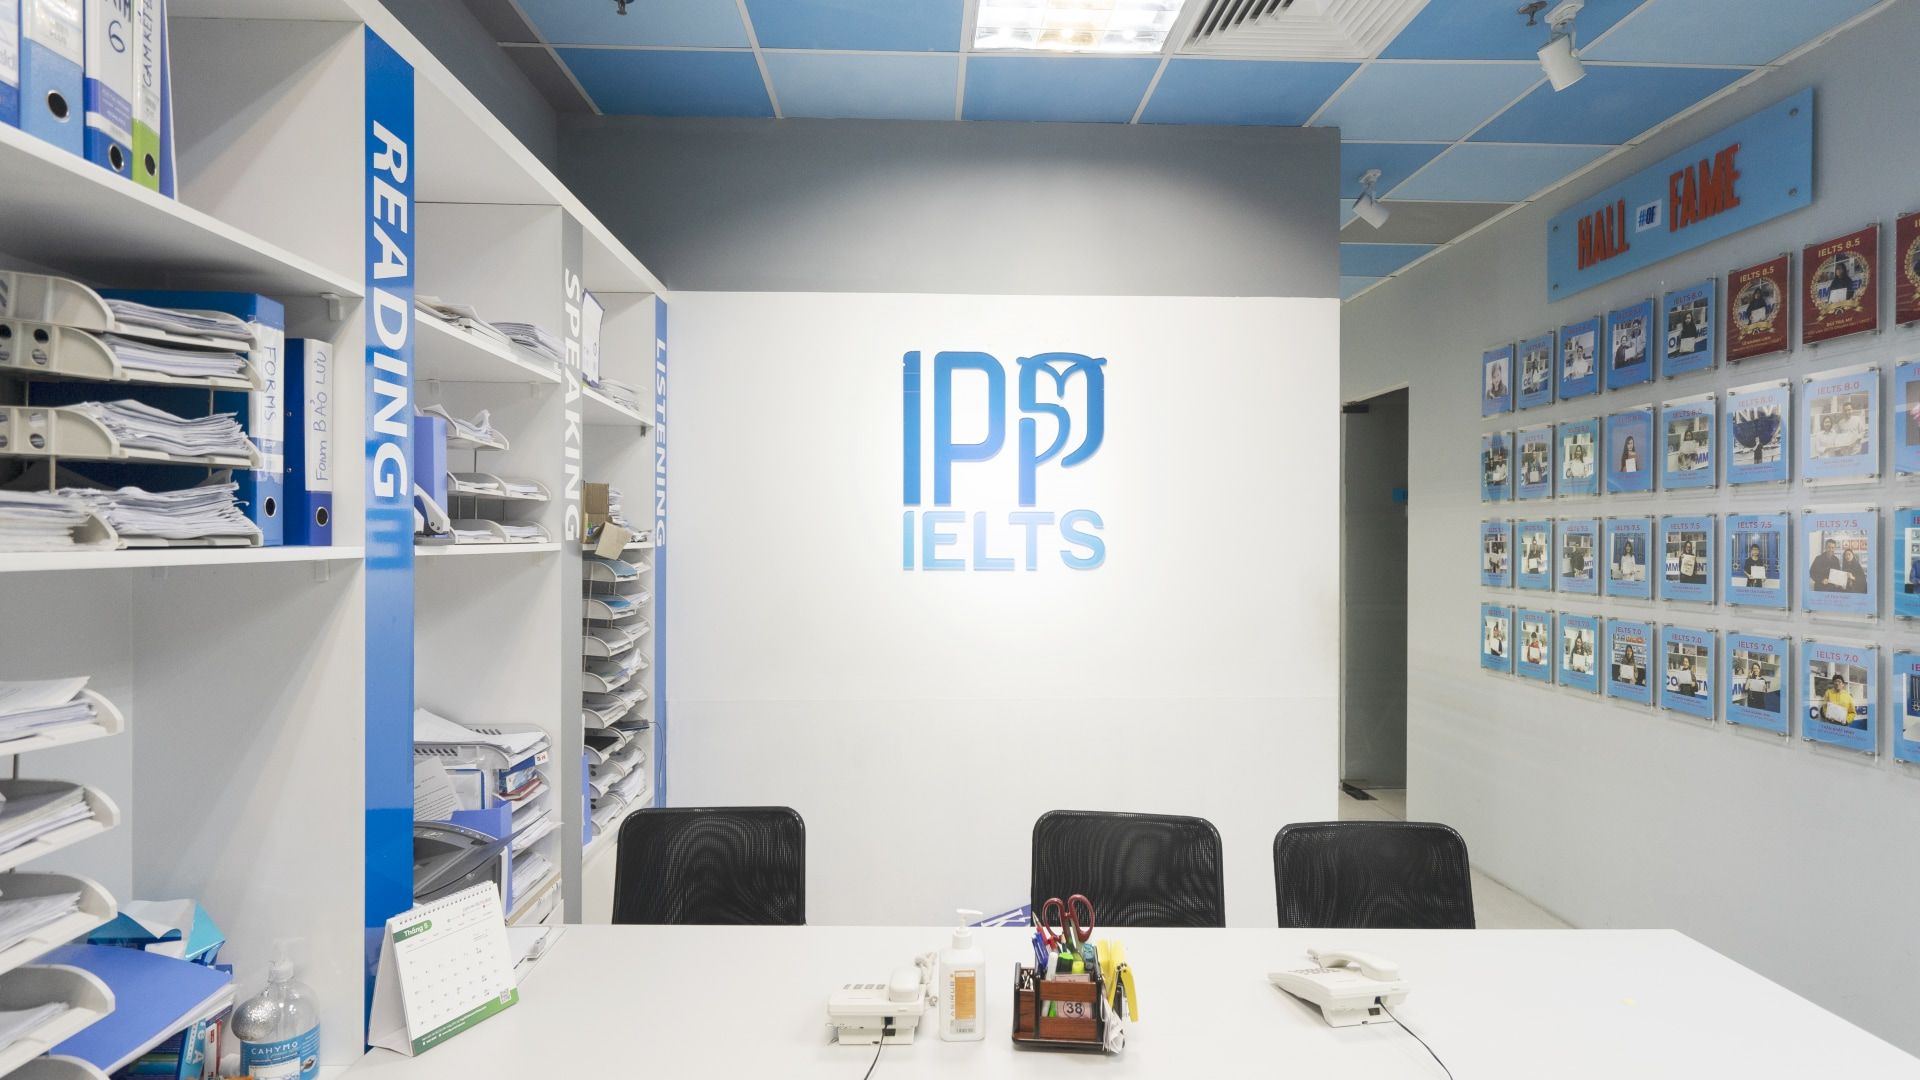 IPP - Trung tâm IELTS Hà Nội luyện thi tốt nhất